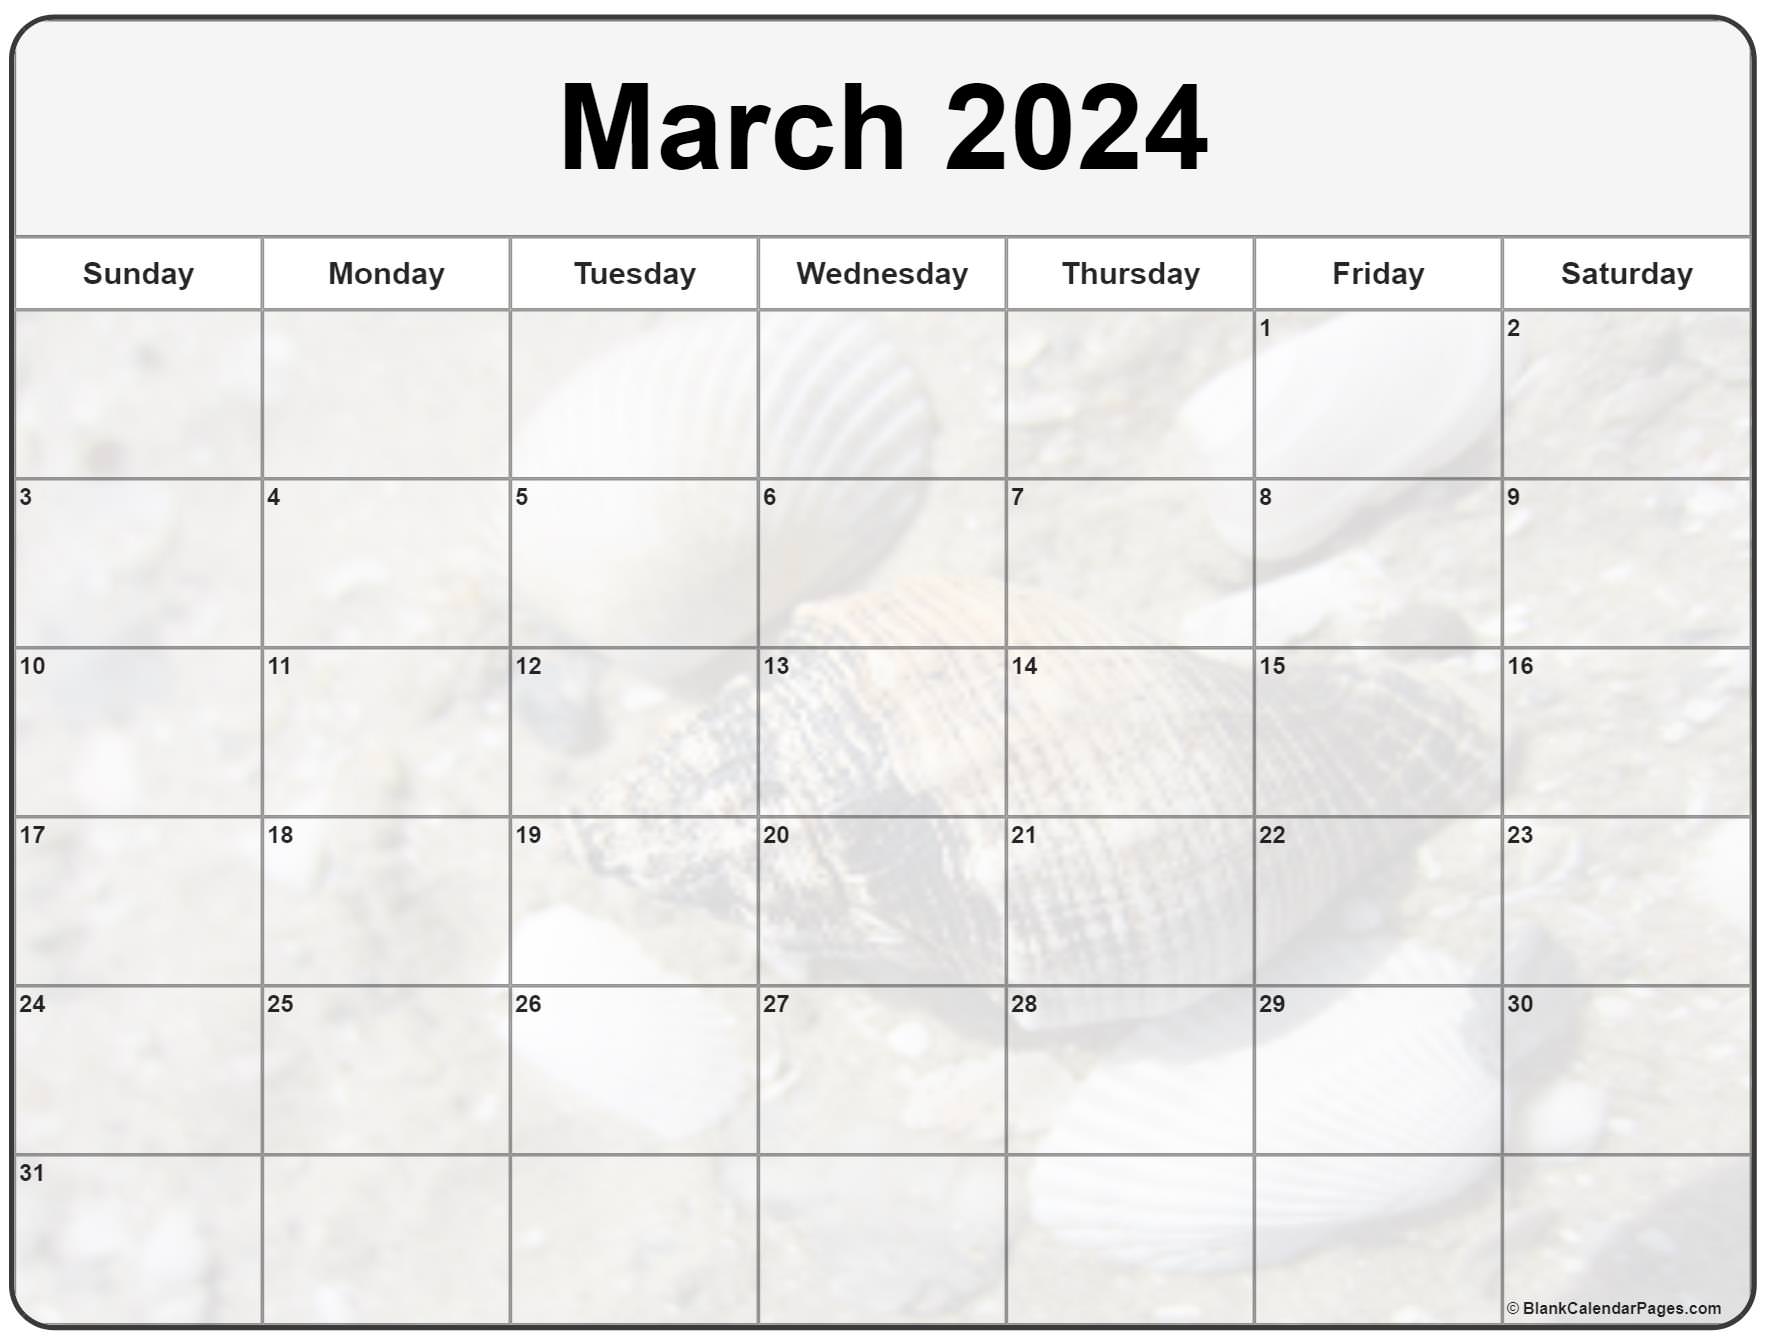 Расписание январь 2023